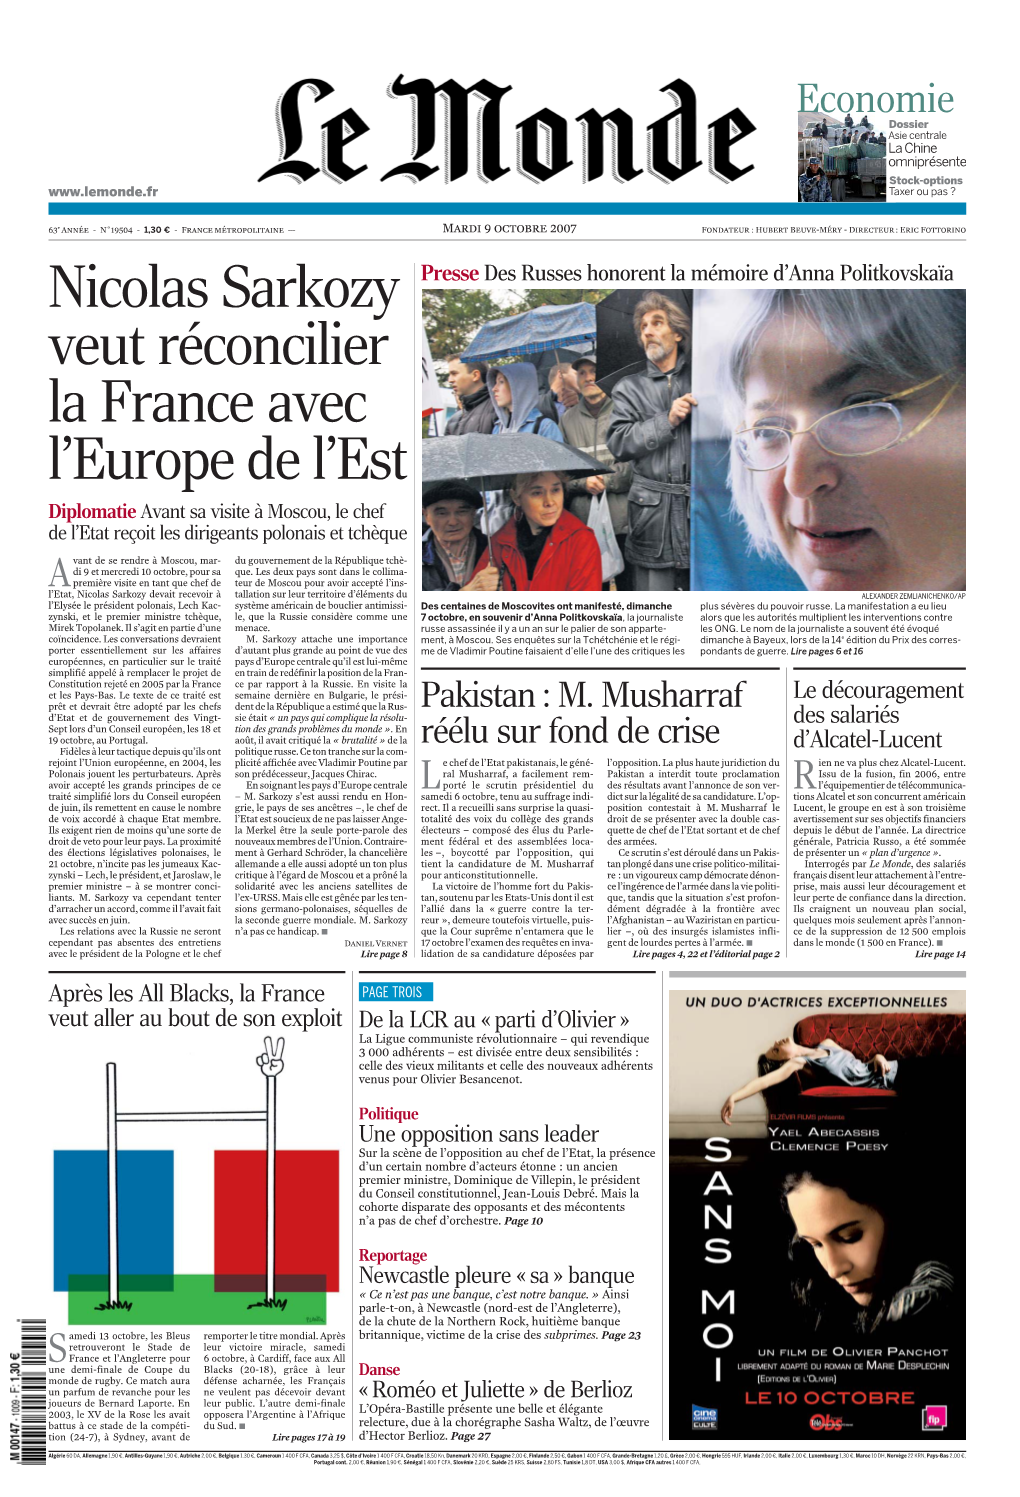 Nicolas Sarkozy Veut Réconcilier La France Avec L'europe De L'est